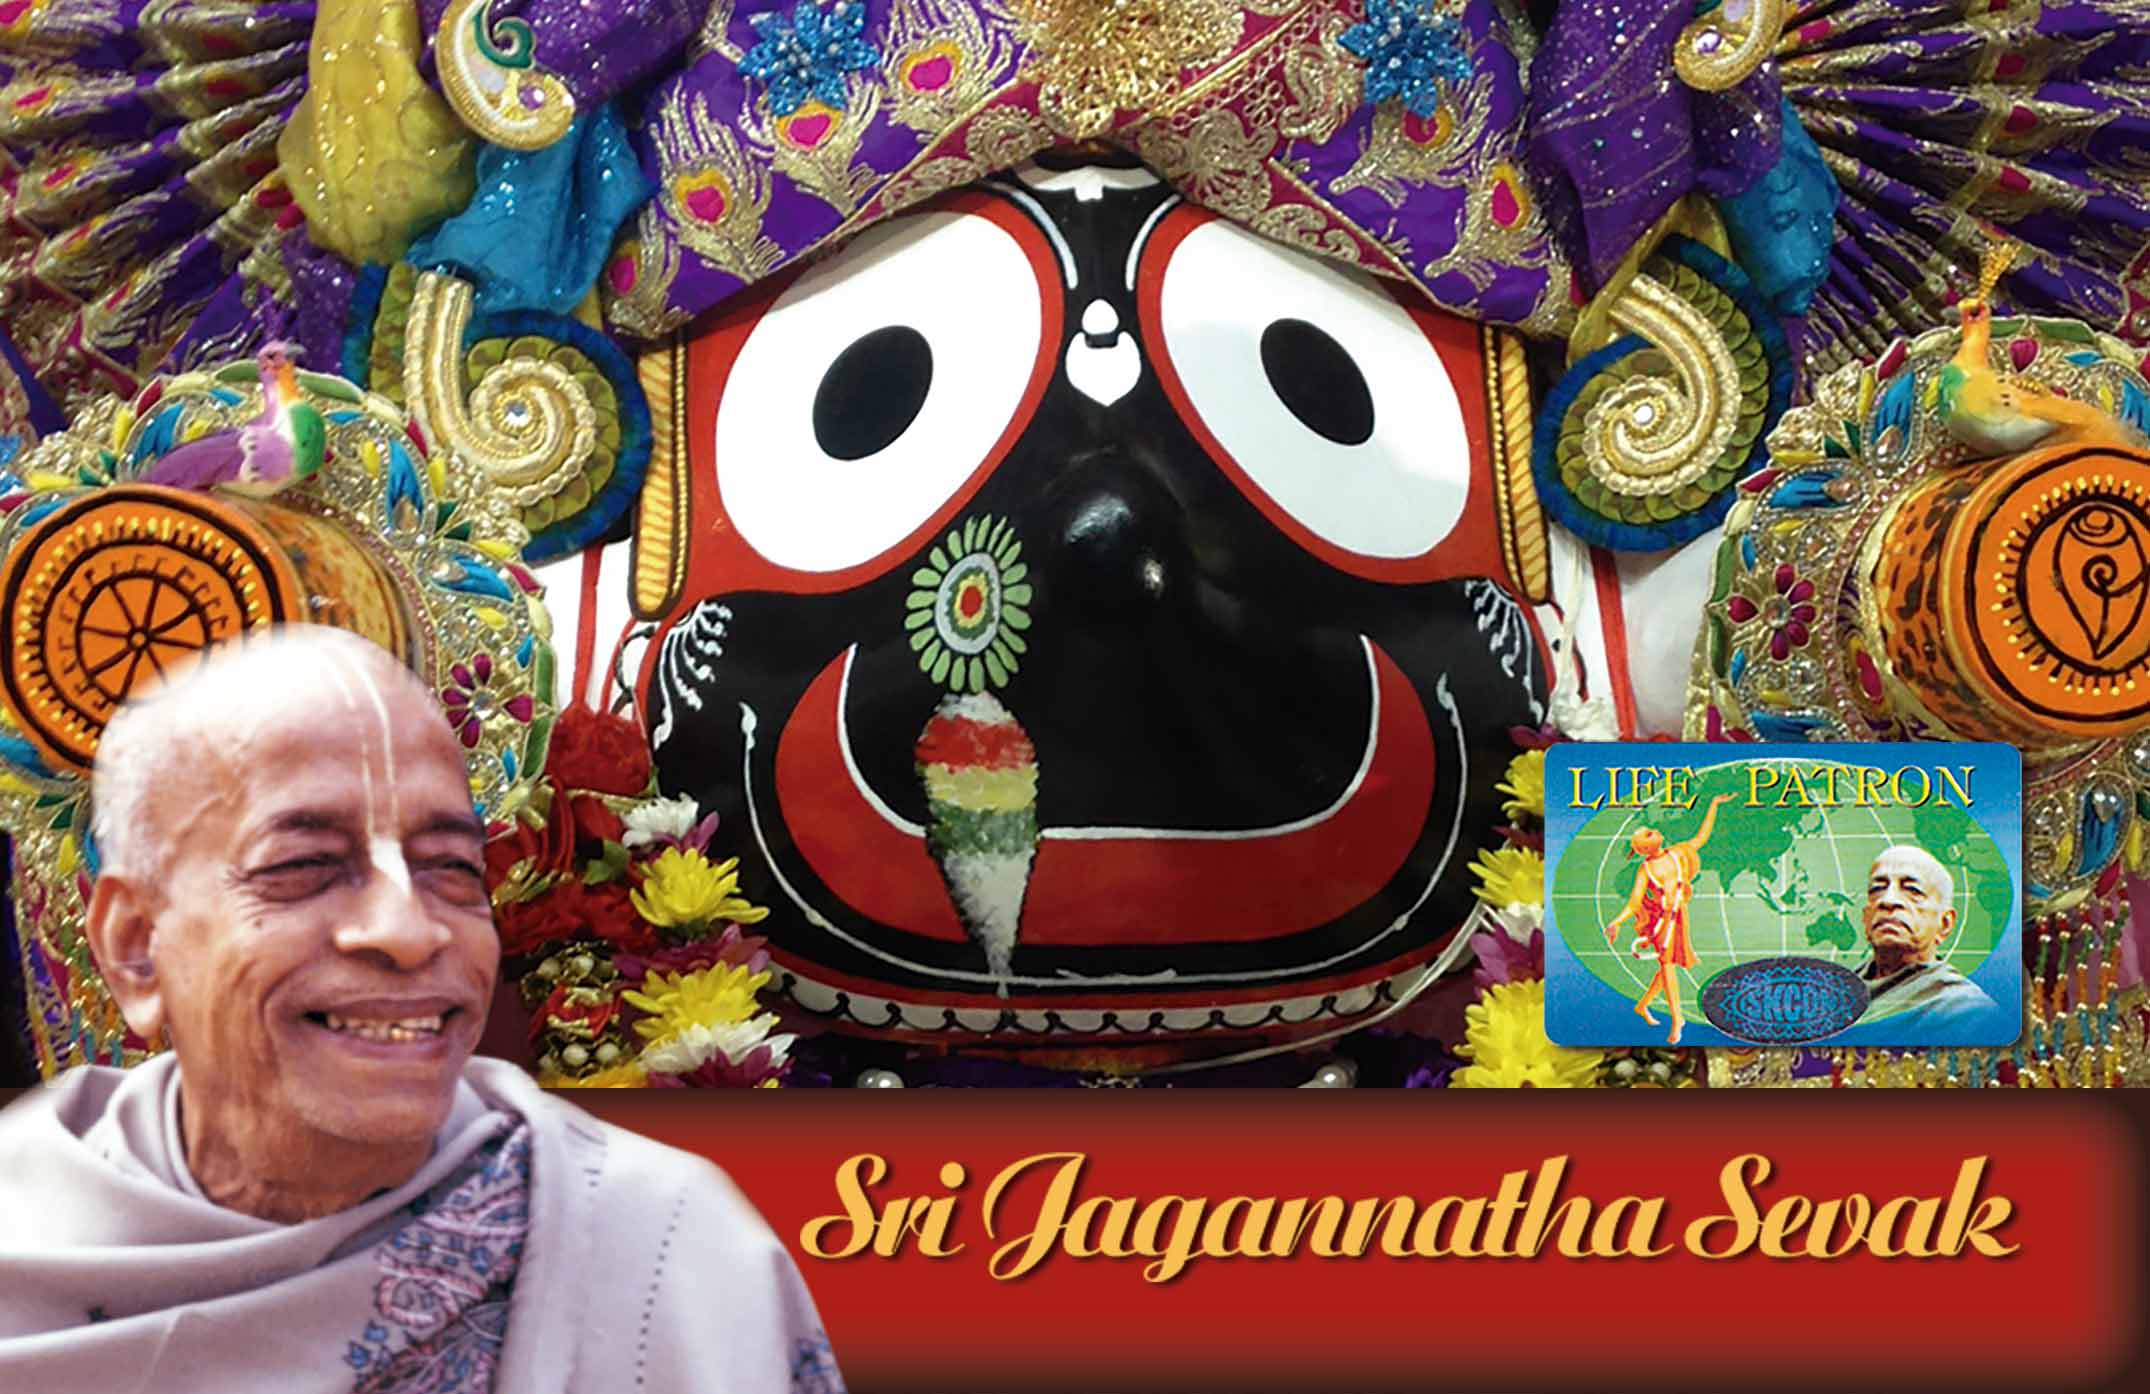 Sri Jagannatha Sevak – Sponsorship of 11.111 €